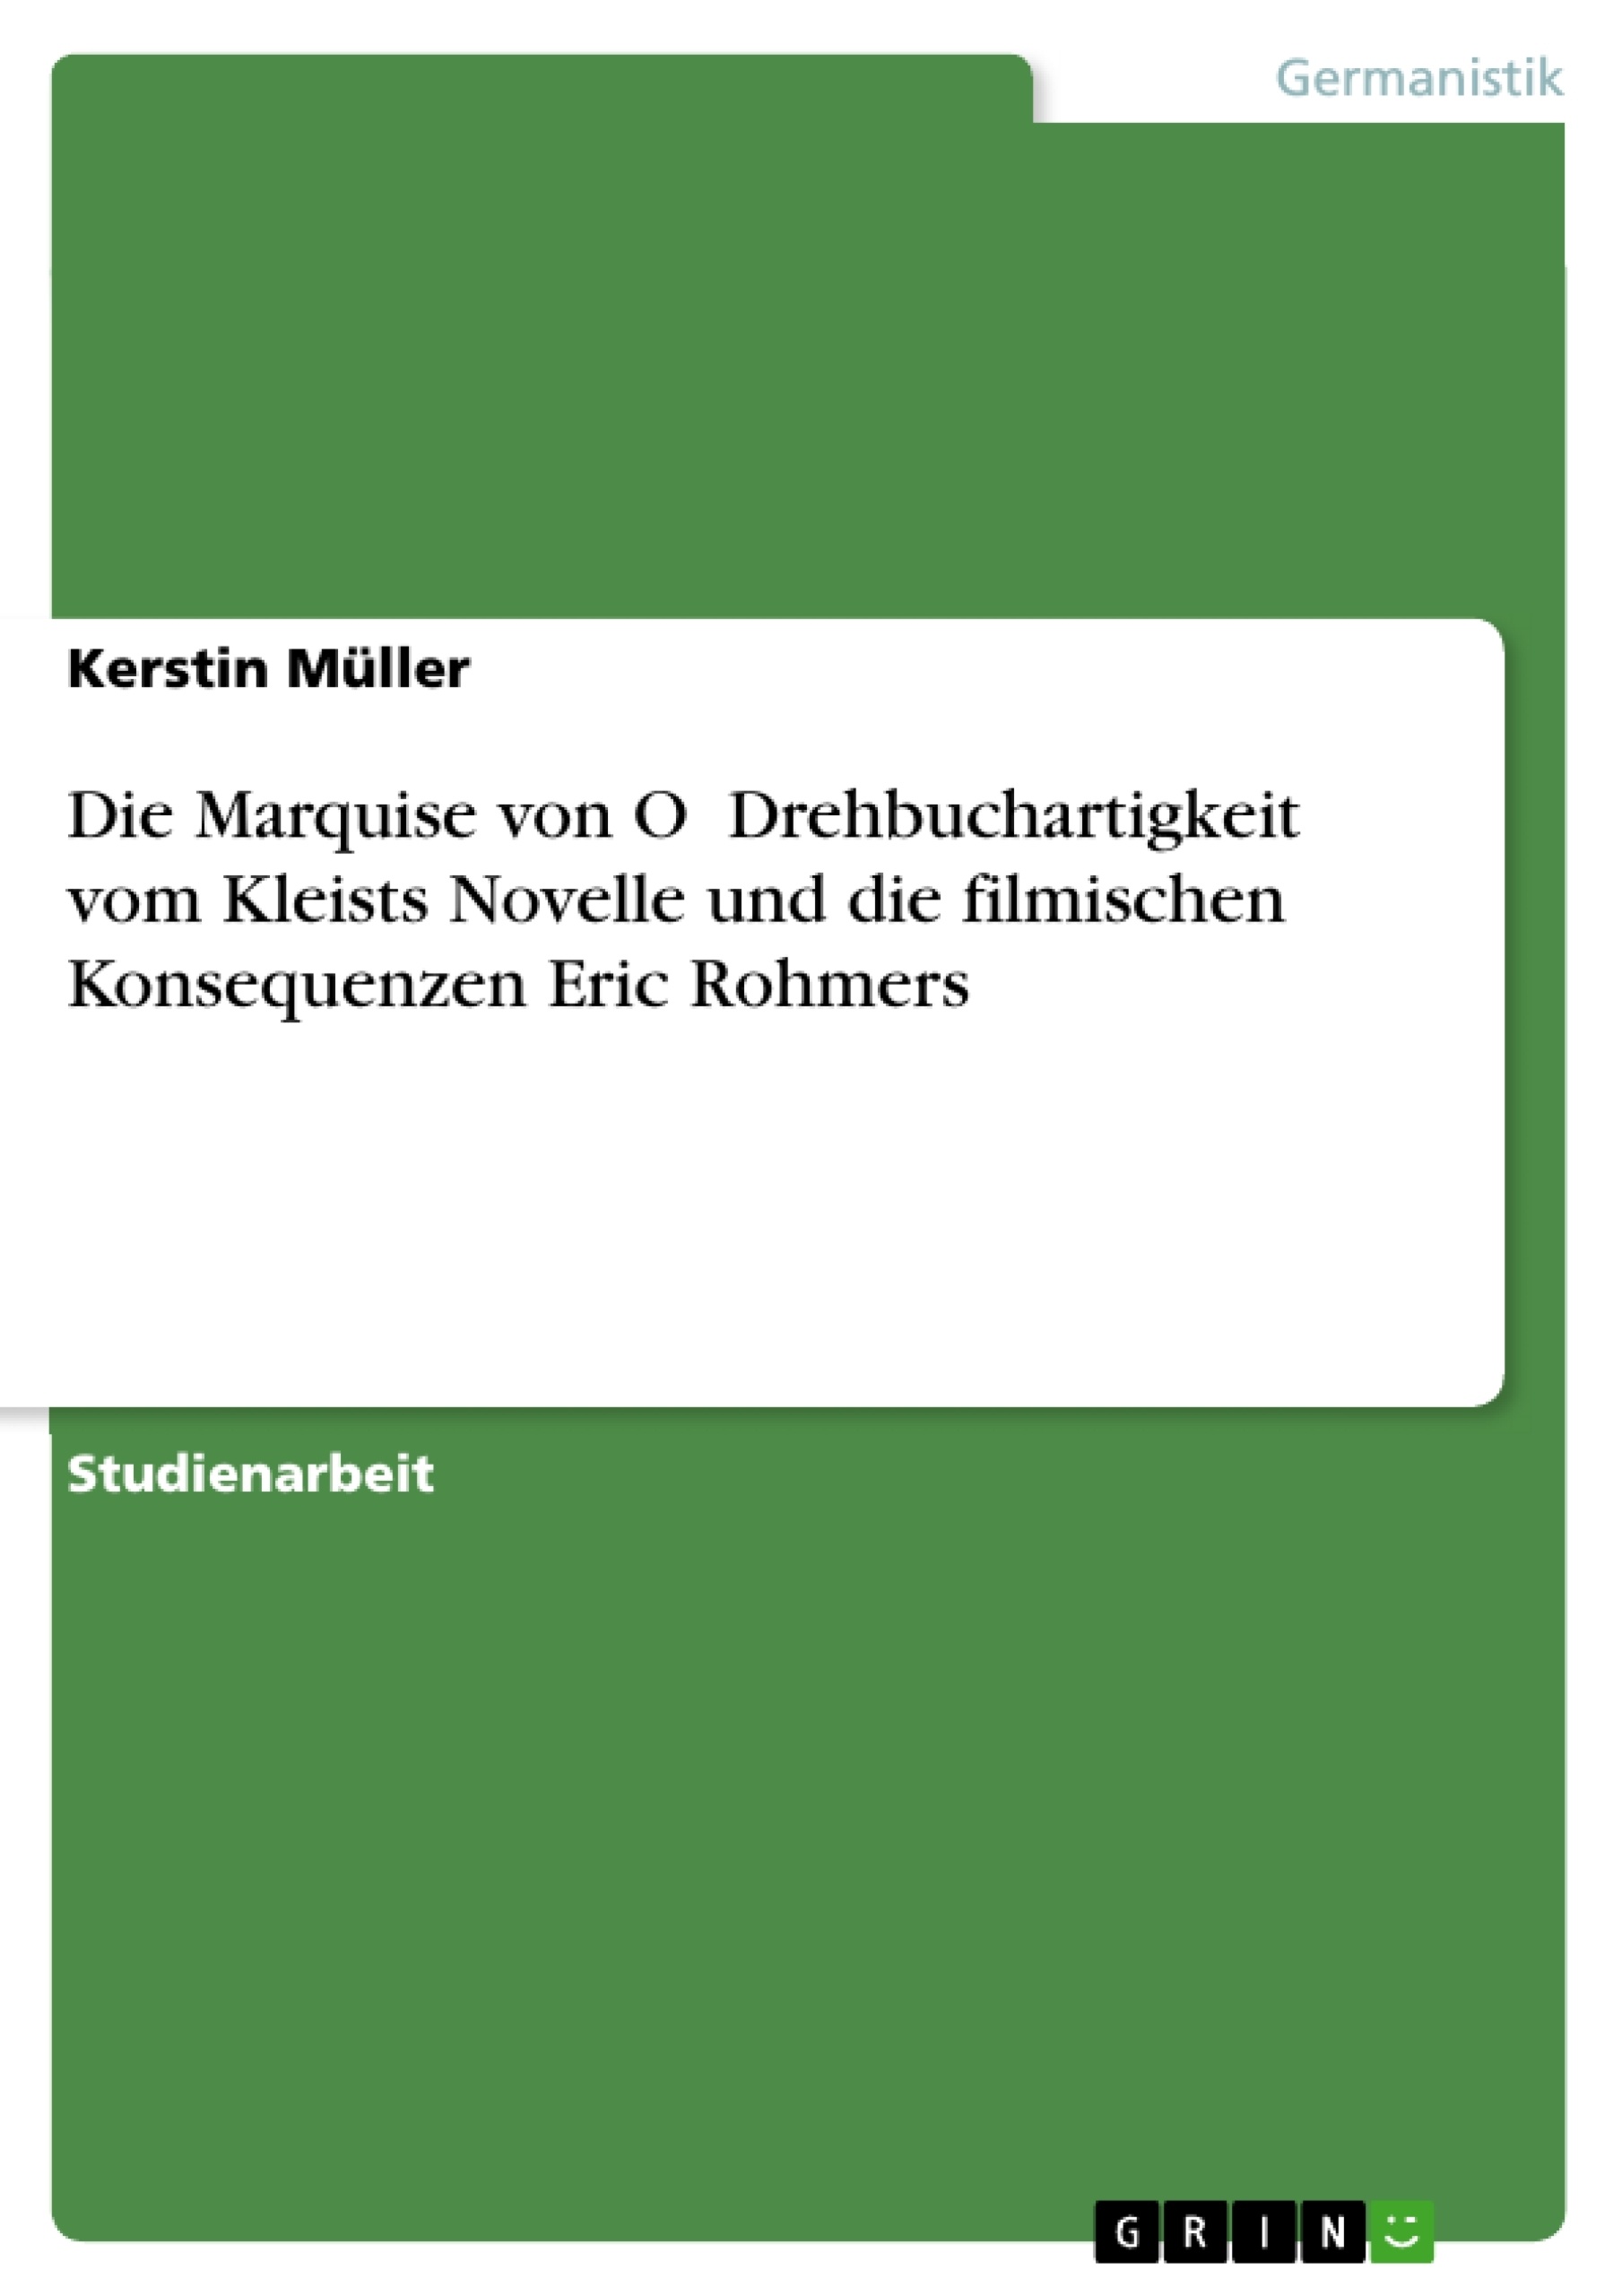 Titel: Die Marquise von O Drehbuchartigkeit vom Kleists Novelle und die filmischen Konsequenzen Eric Rohmers